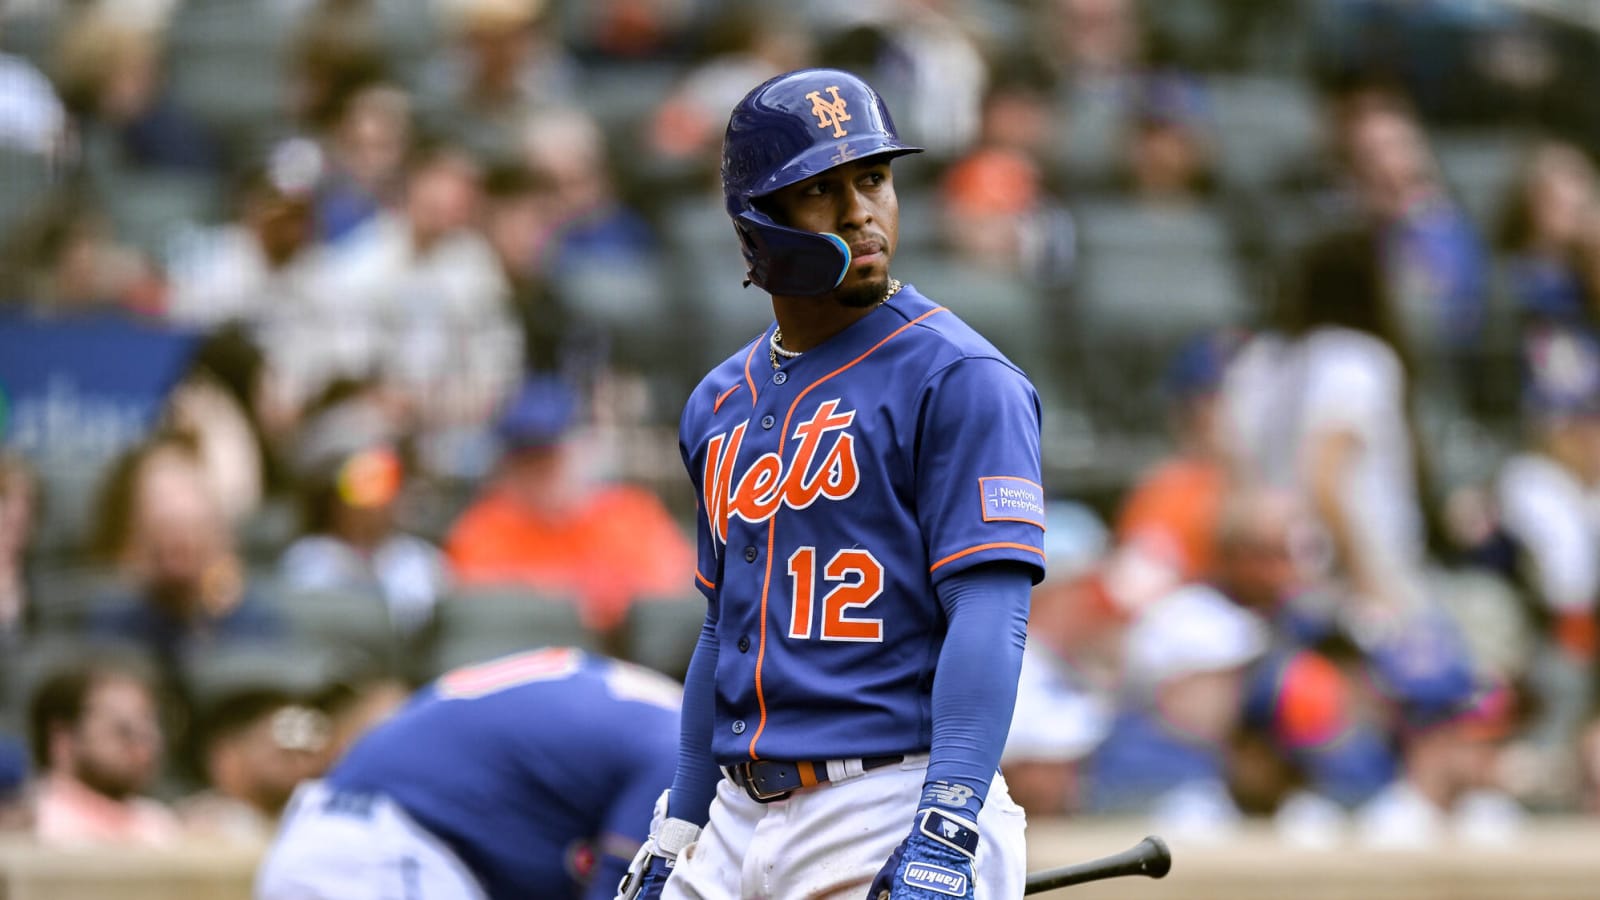 Mets shortstop takes creative step in effort to snap slump